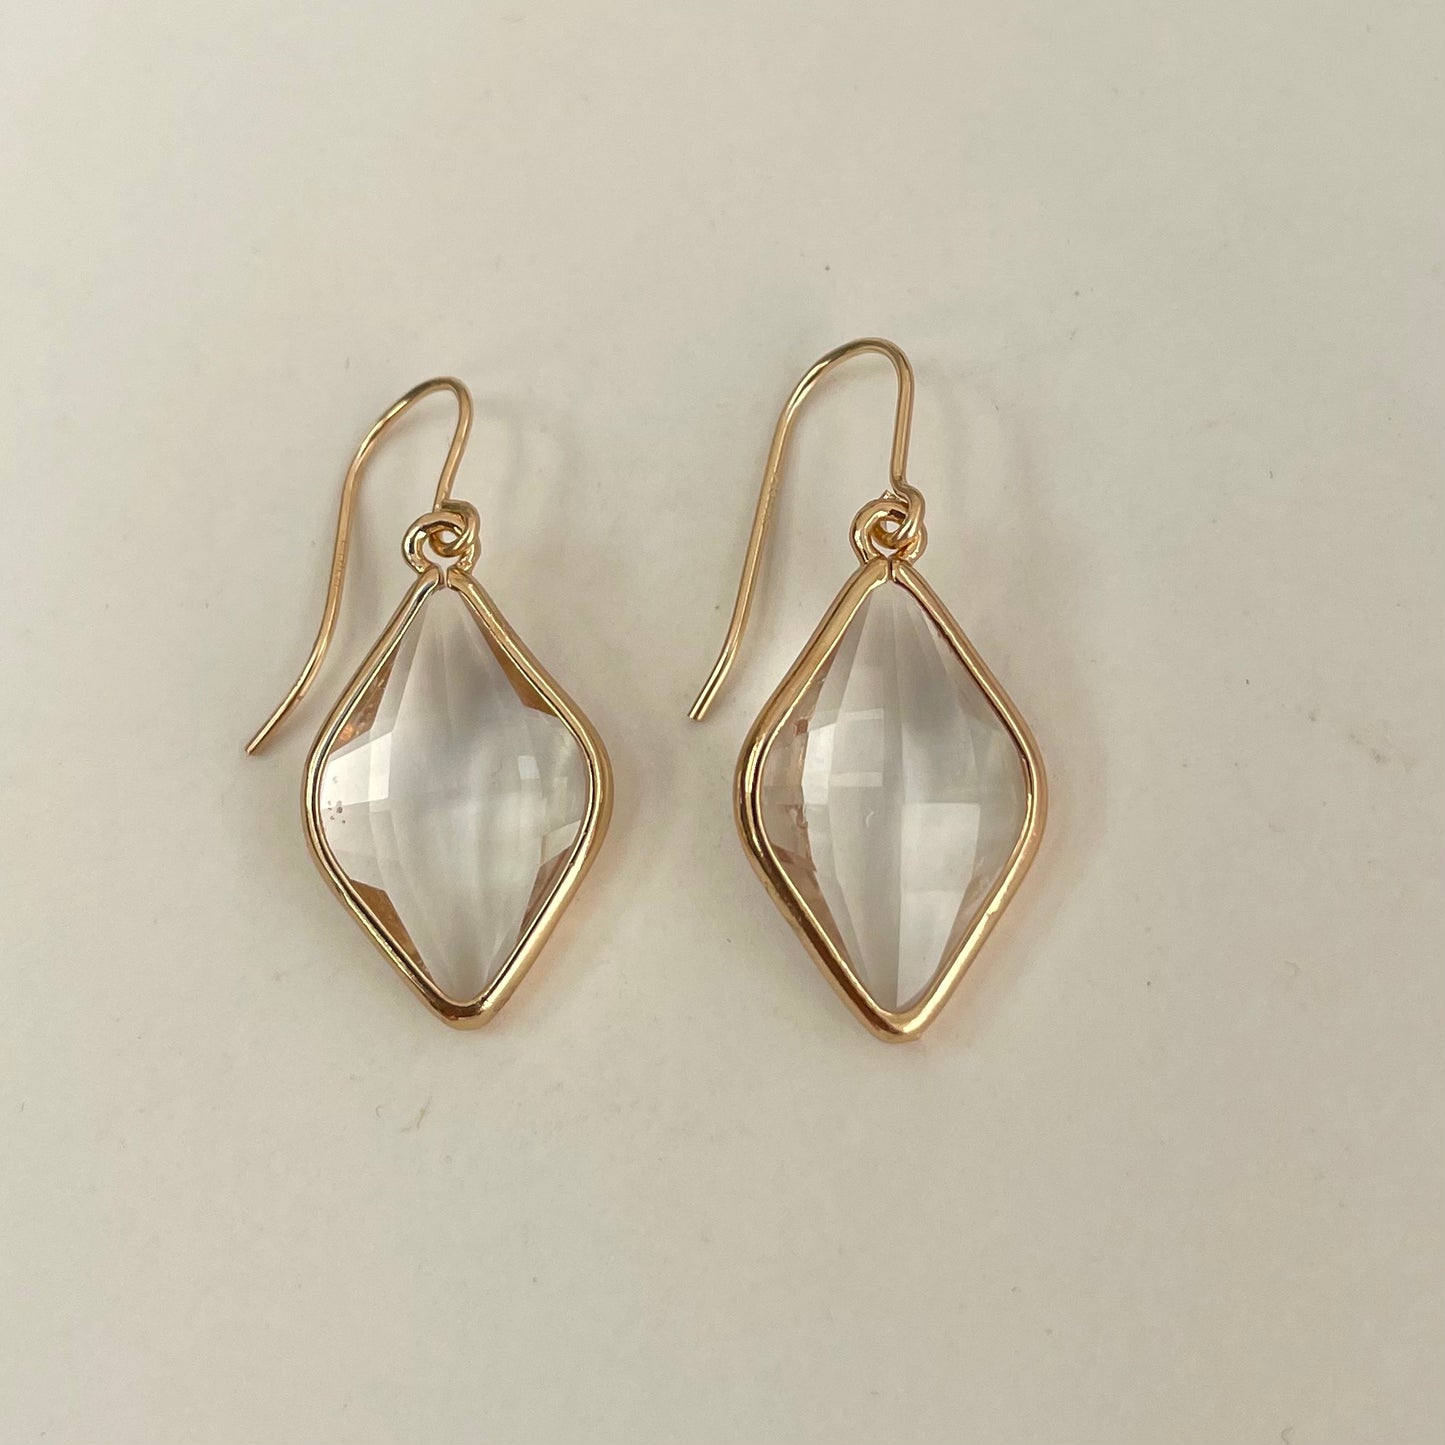 'Wren' diamond shaped earrings